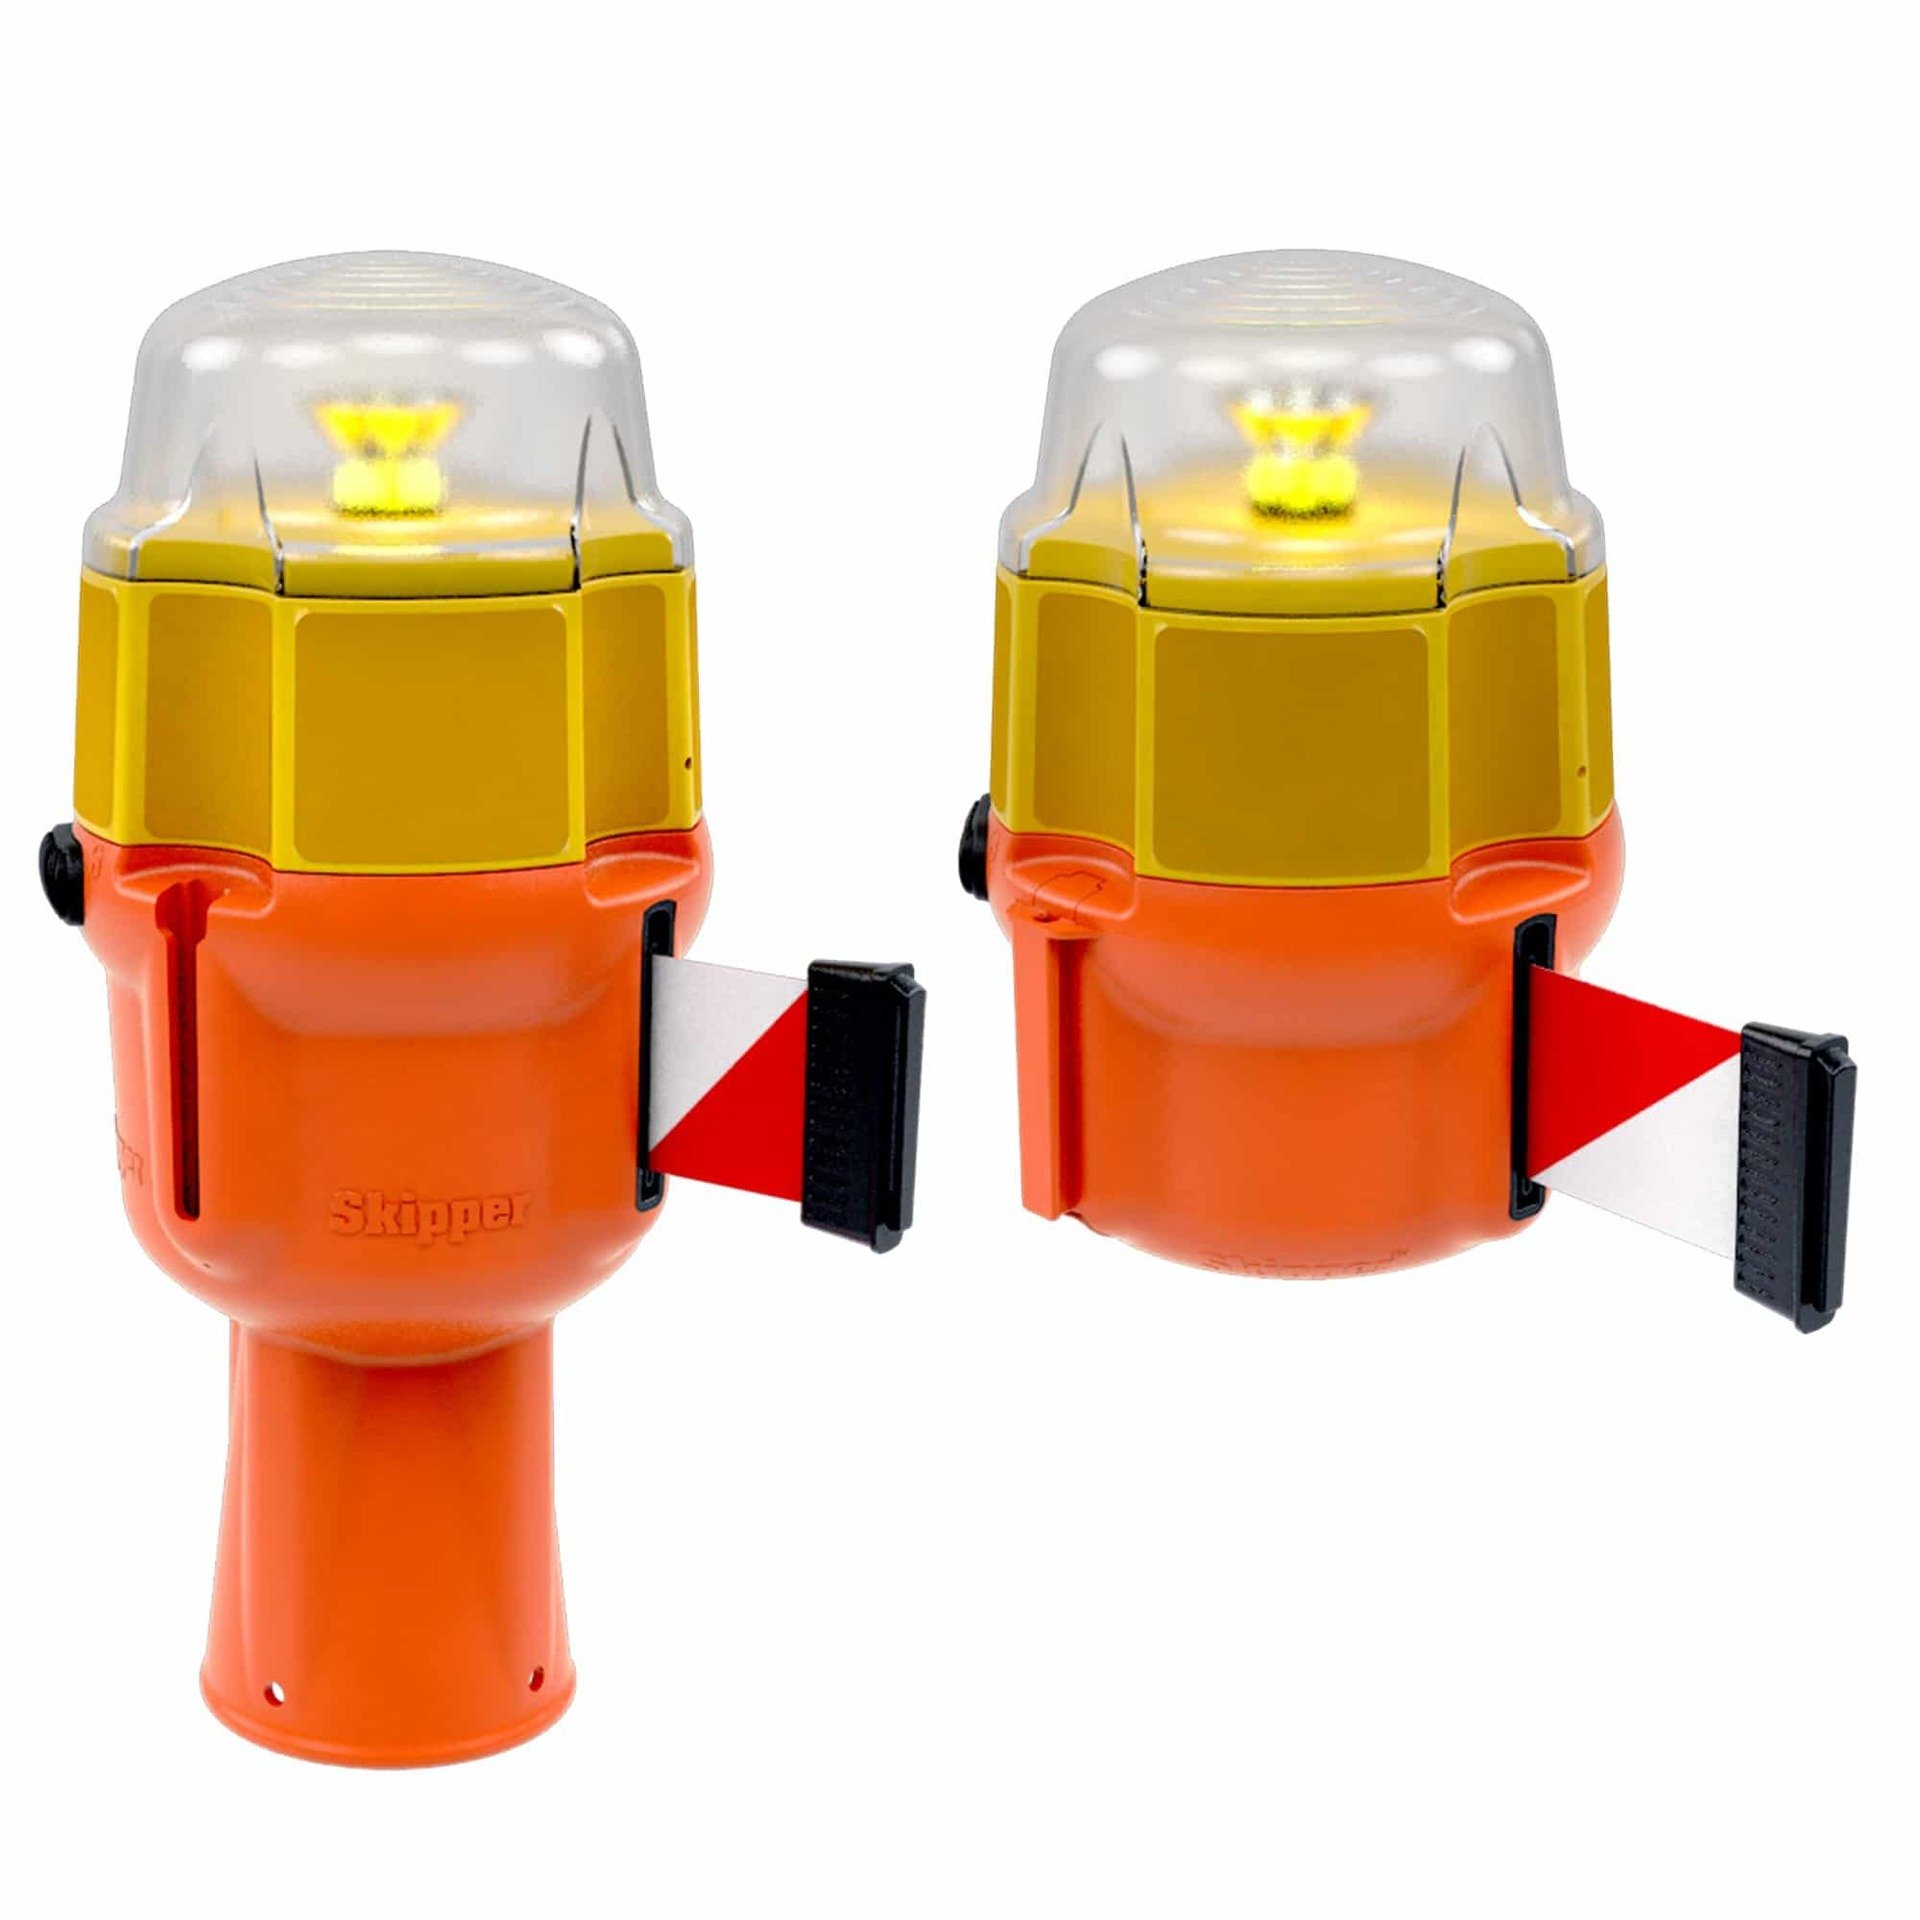 Lumière LED rechargeable pour barrières et cônes